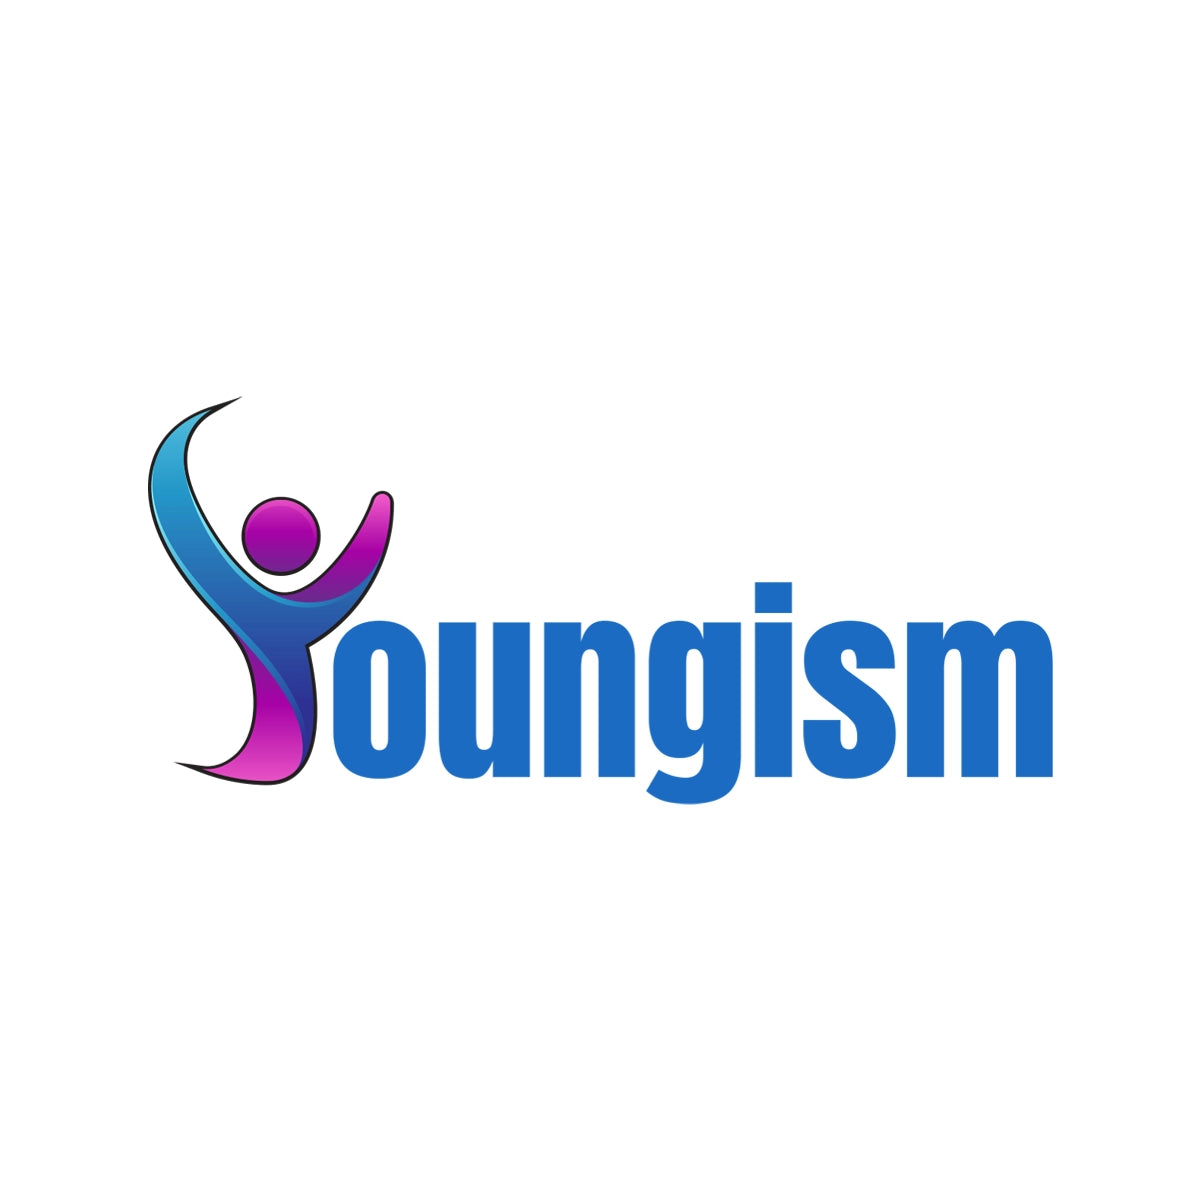 youngism.com